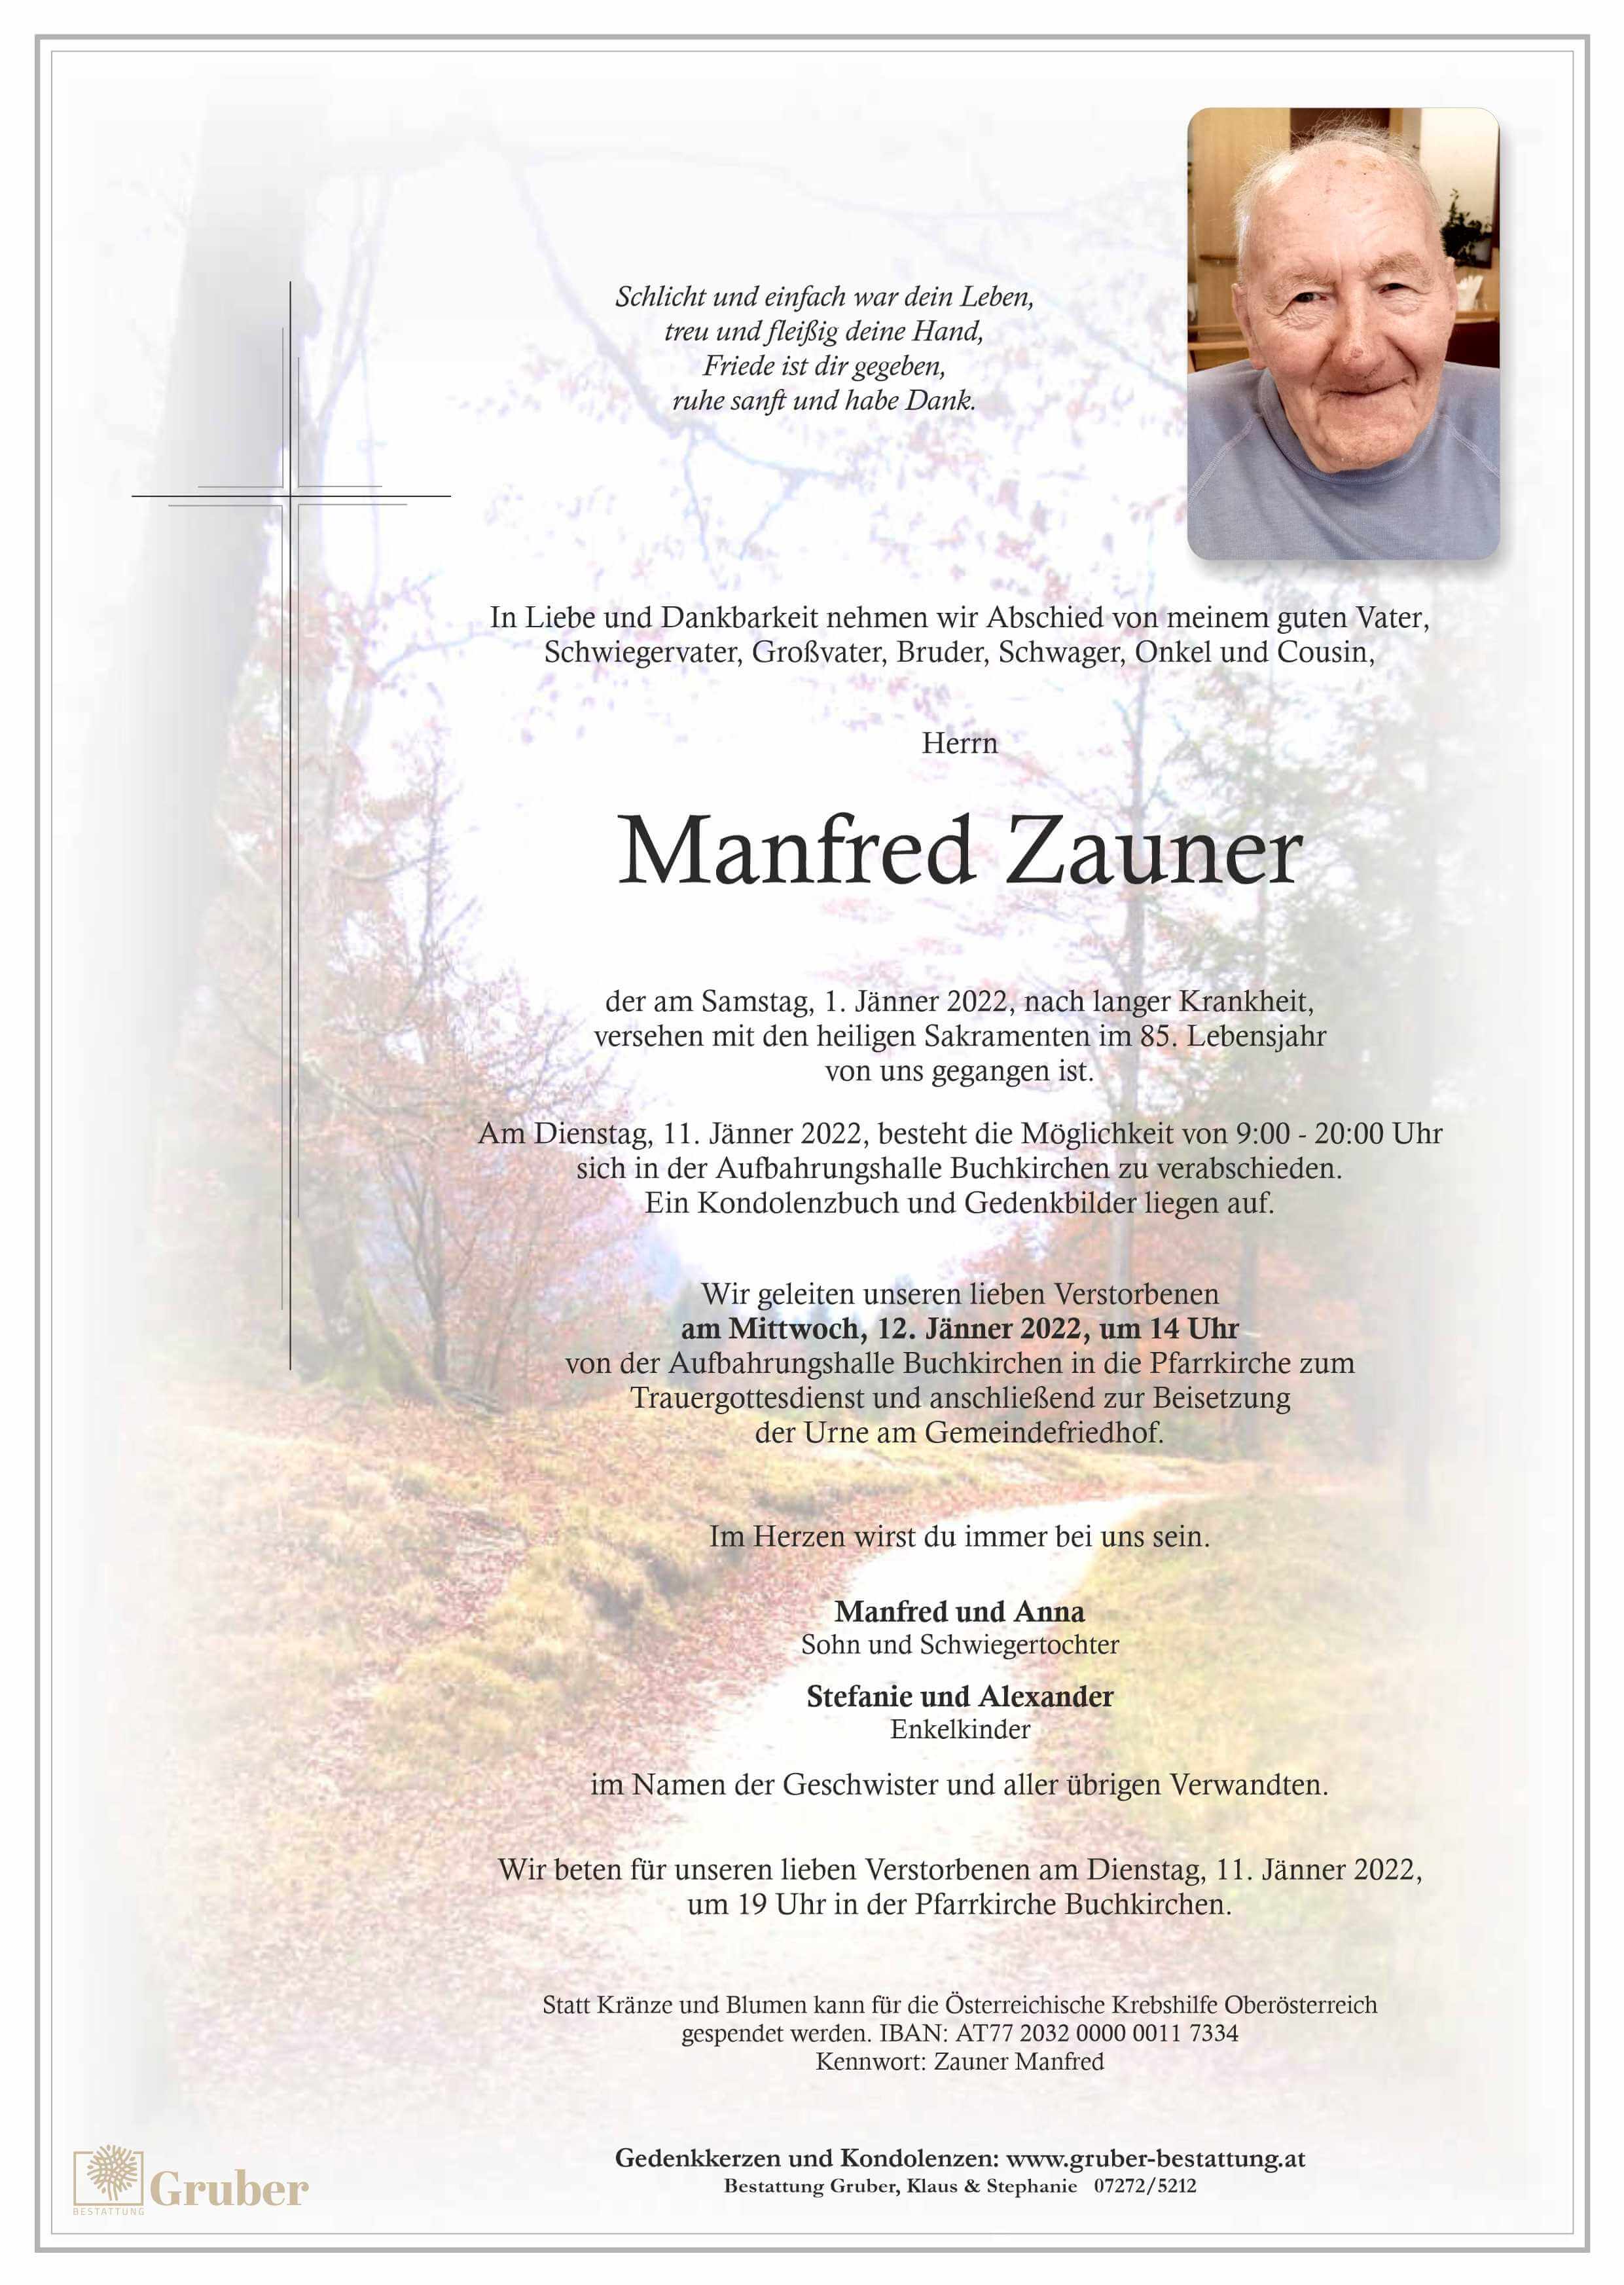 Manfred Zauner (Buchkirchen)